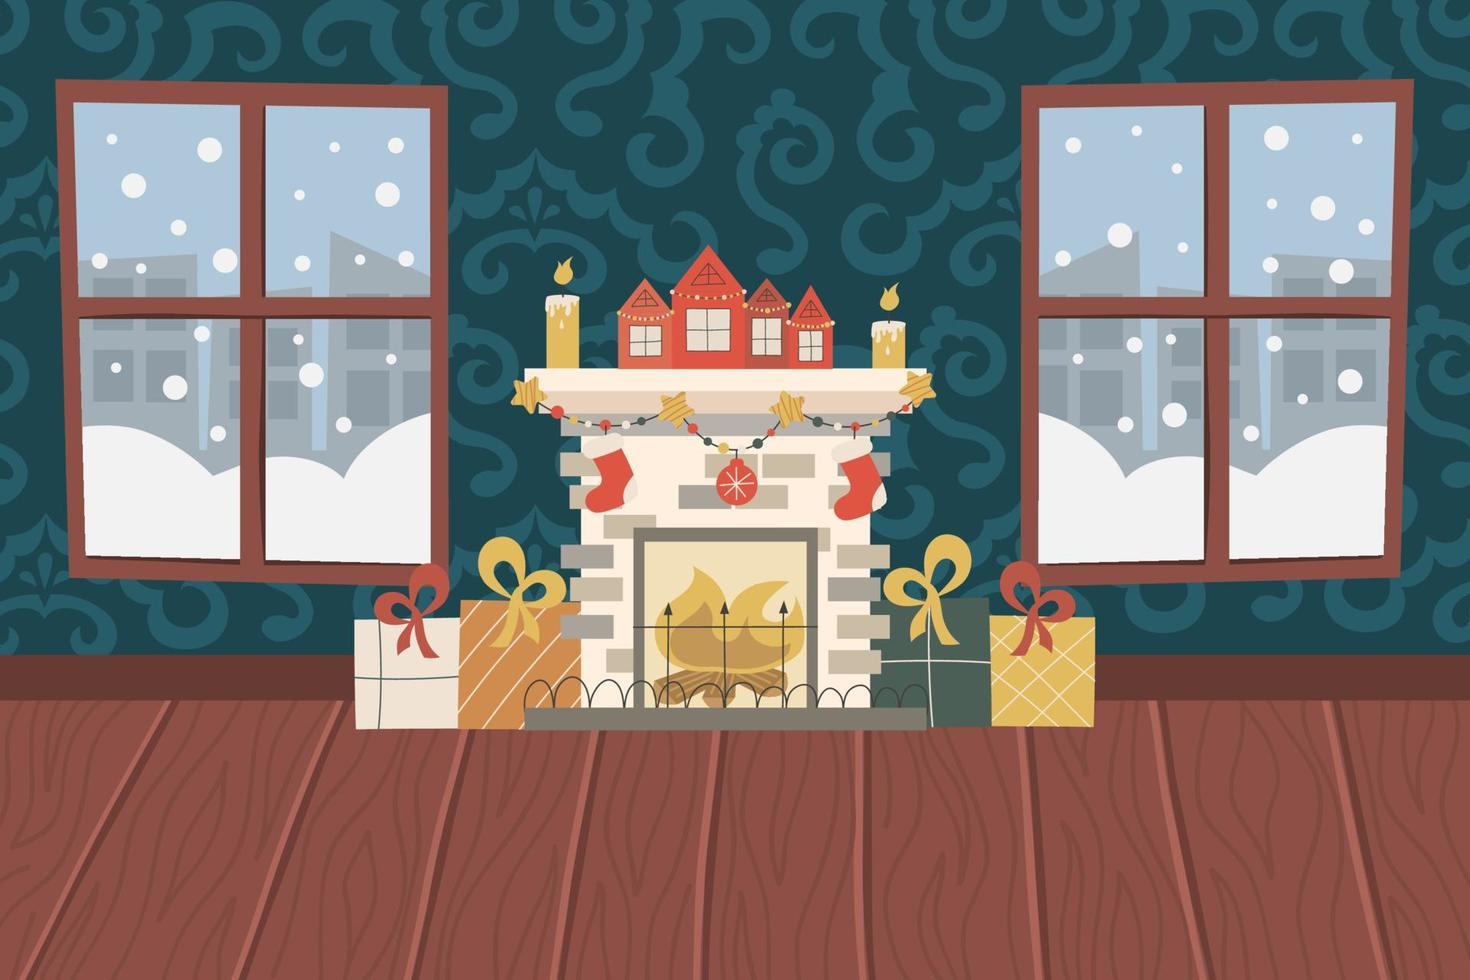 soggiorno natalizio con camino, pavimento in legno, carta da parati a motivi geometrici e finestre innevate.camino con candele, regali e calze, case con ghirlande. illustrazione vettoriale per un interno festivo.